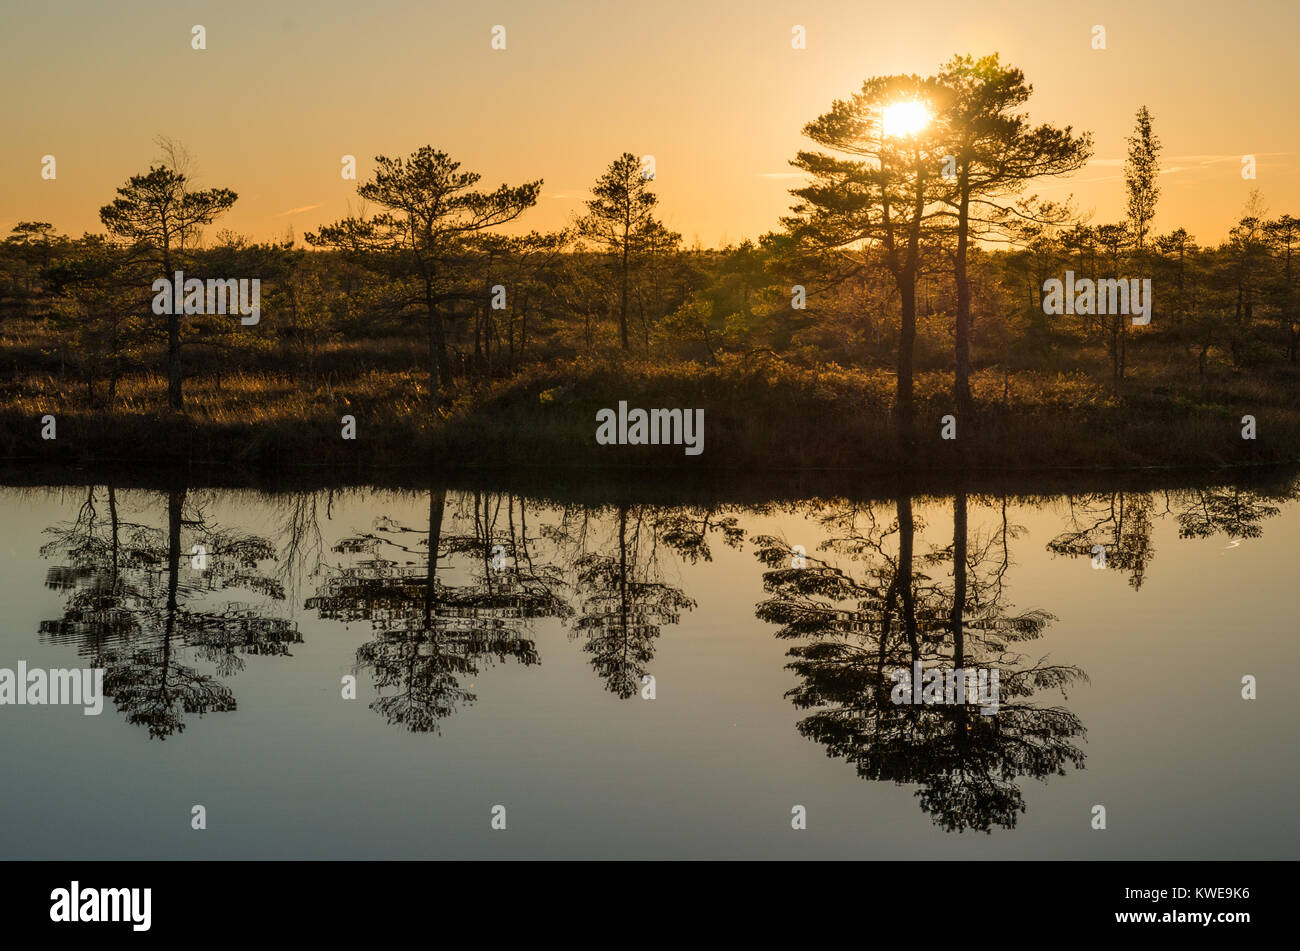 Une scène sur un marécage pendant le coucher du soleil avec la lumière orange, silhouettes d'arbres et reflets dans l'étang. Banque D'Images